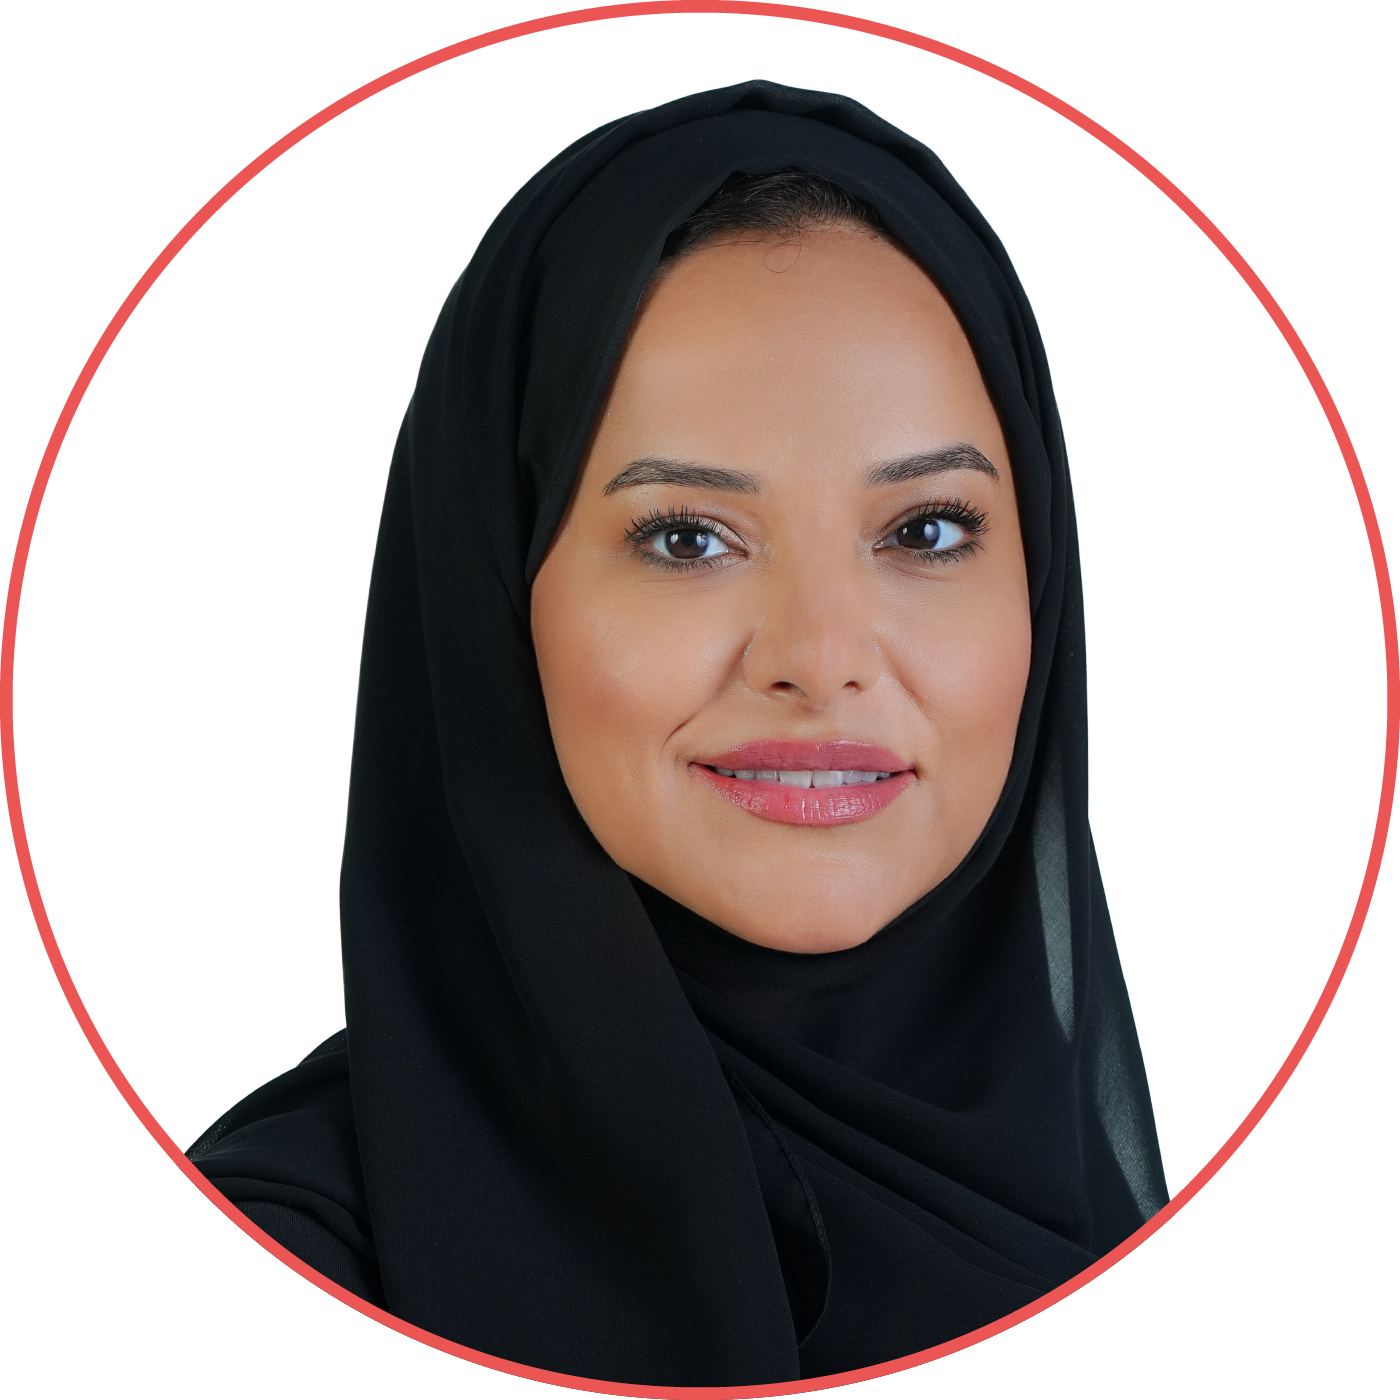 الآنسة إيمان أحمد الخميري، مستشار في وزارة الدعم الحكومي